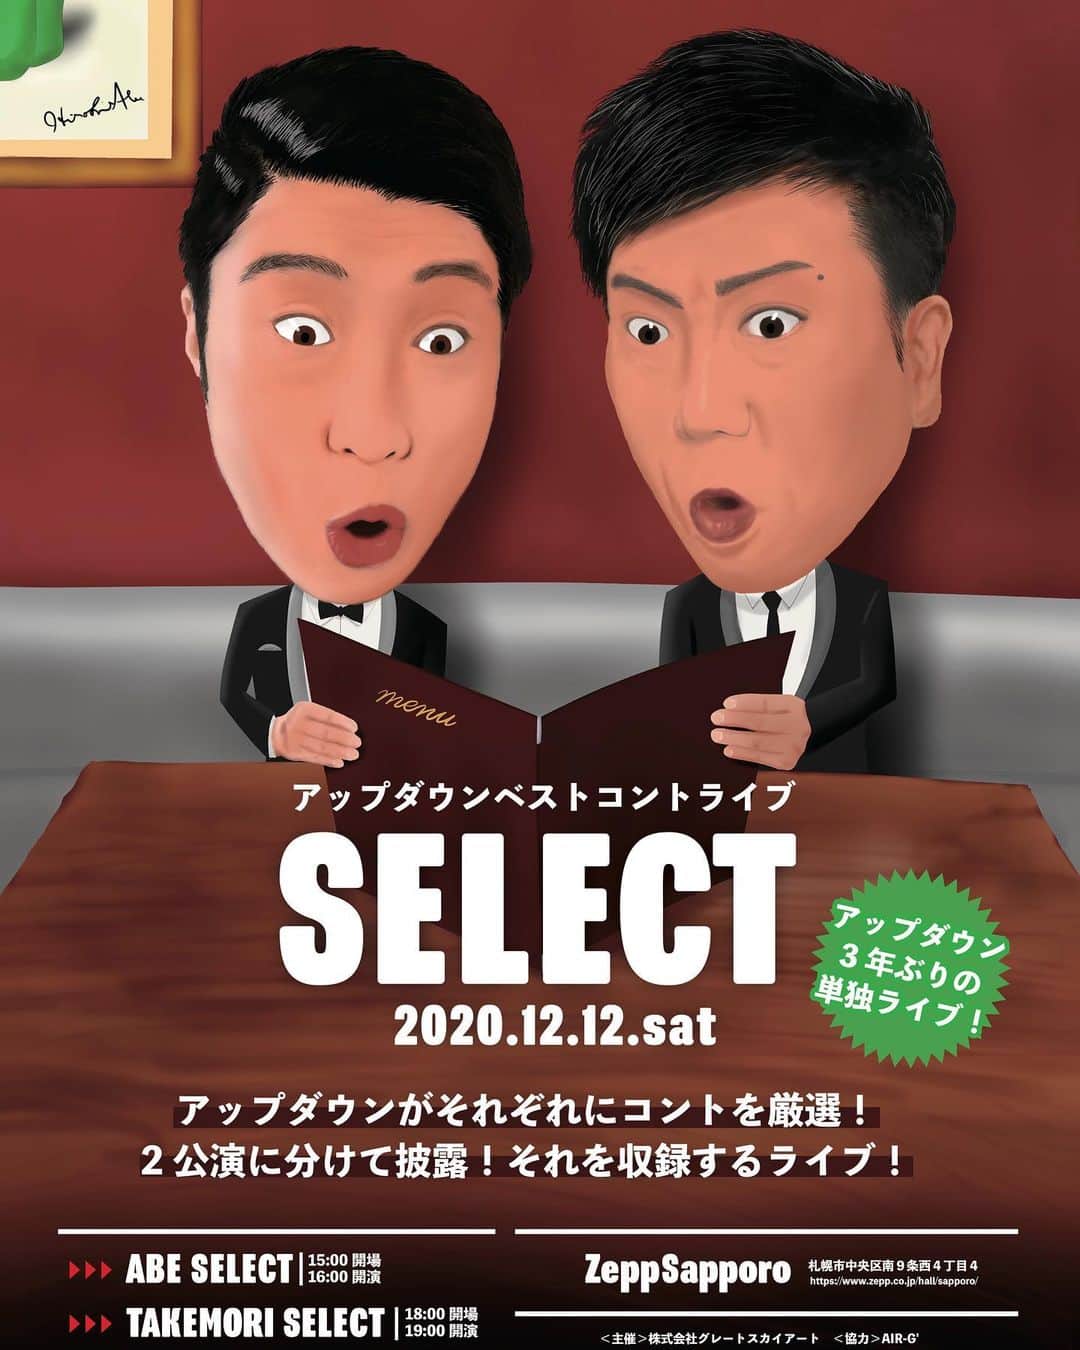 阿部浩貴のインスタグラム：「【フライヤー、ポスター完成！】 12月12日（土）Zepp Sapporoで開催されるアップダウン3年ぶりの単独ライブ『SELECT』のフライヤーポスターが完成！  イラストを描かせて頂きました。 ビックコミックの表紙っぽい感じ？  今回のライブは2回公演ですが、2公演とも内容が違います！ 1公演目が【阿部セレクト】 2公演目が【竹森セレクト】 となっており、それぞれがやりたい、好きなアップダウンのネタをセレクトします！  オールセレクト（通し券）もあるので、よろしくお願いします！  チケットは発売中です！！  アップダウンベストコントライブ 『SELECT』  アップダウンがそれぞれにコントを厳選！ 2公演に分けて披露！それを収録するライブ！  12月12日（土） 【会場】 Zepp Sapporo 【時間】 阿部セレクト15:00開場16:00開演 竹森セレクト18:00開場19:00開演 【チケット】 前売5000円　当日5500円 オールセレクト（2公演）前売8000円 ローソンチケット　Lコード:11650  アップダウン公式LINEでも予約受付中！ 【アップダウンオフィシャルLINEアカウント】 ◆◇登録はこちらから◆◇ https://line.me/R/ti/p/%40wwg9401t」